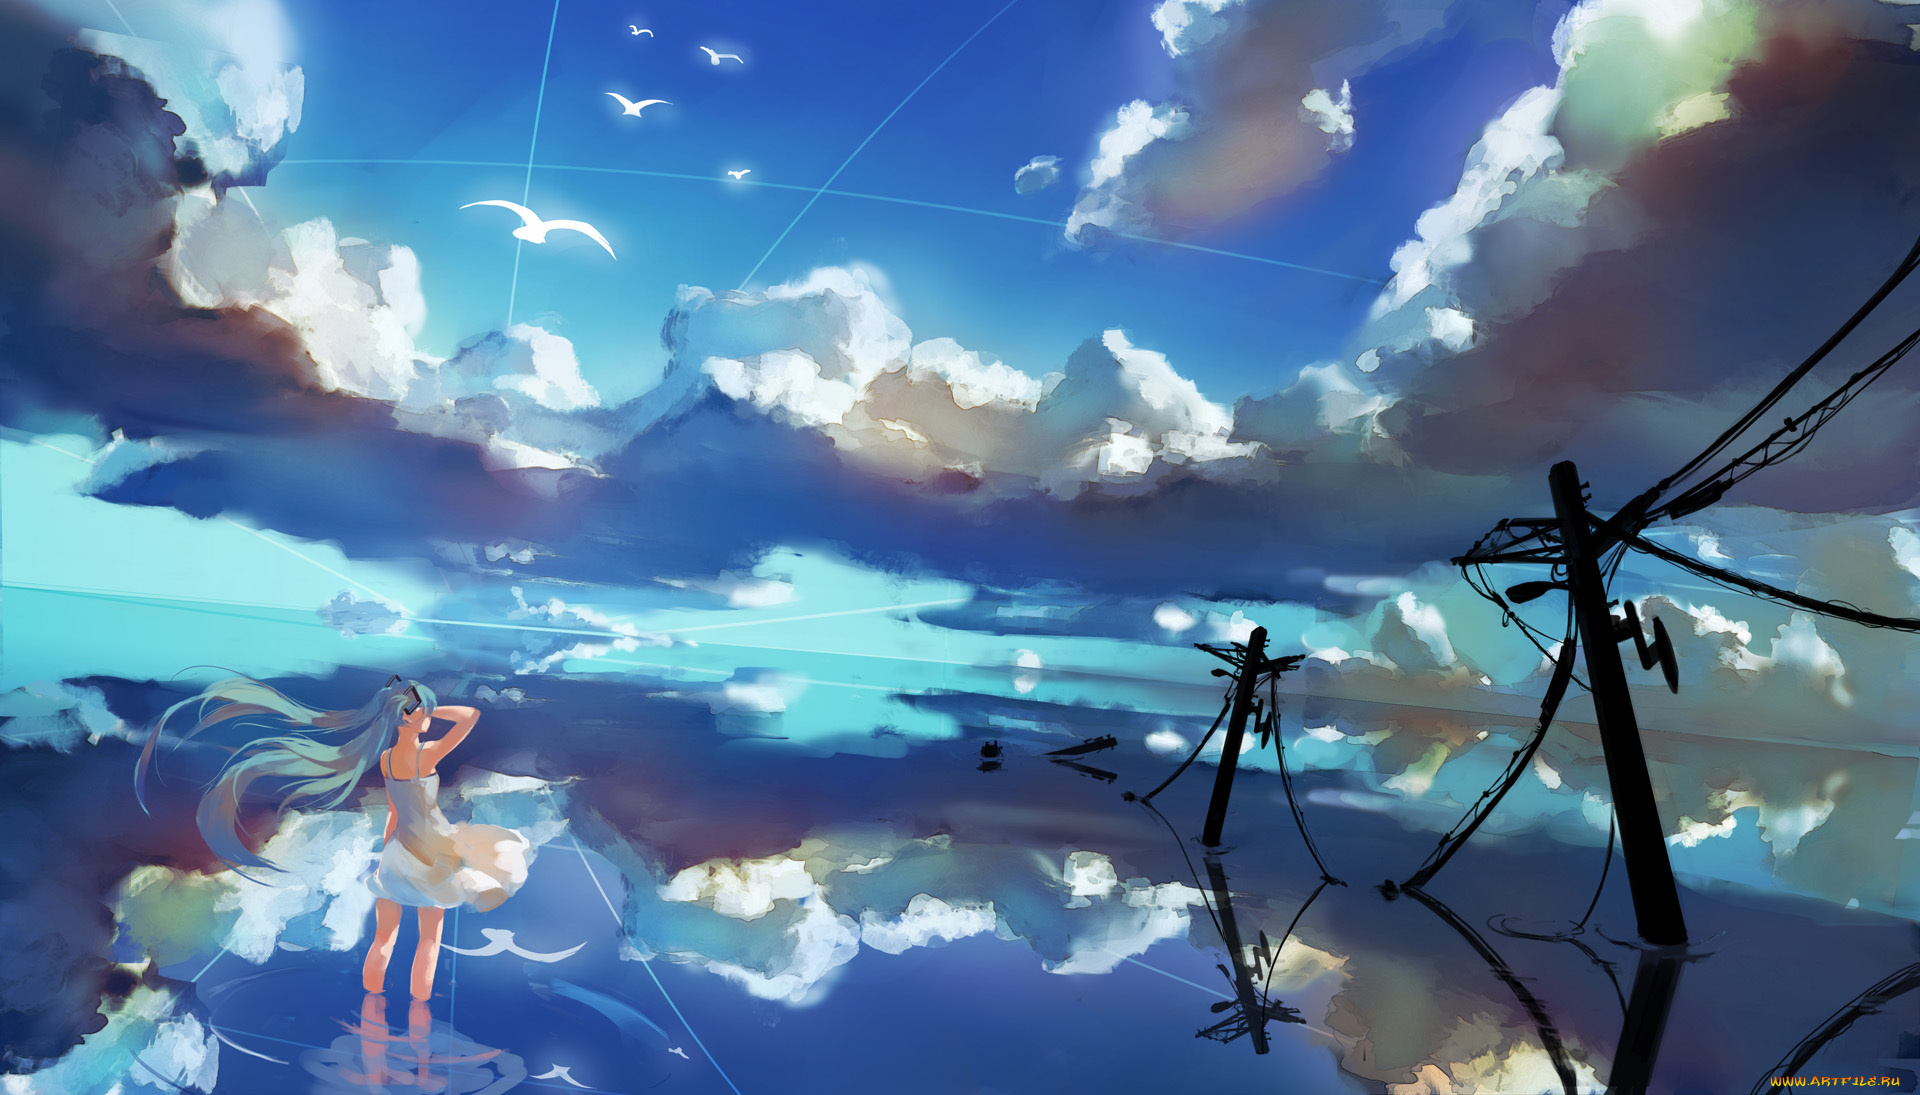 аниме, vocaloid, отражение, облака, небо, hatsune, miku, провода, лэп, вода, спиной, девушка, птицы, yaozhiligenius, арт